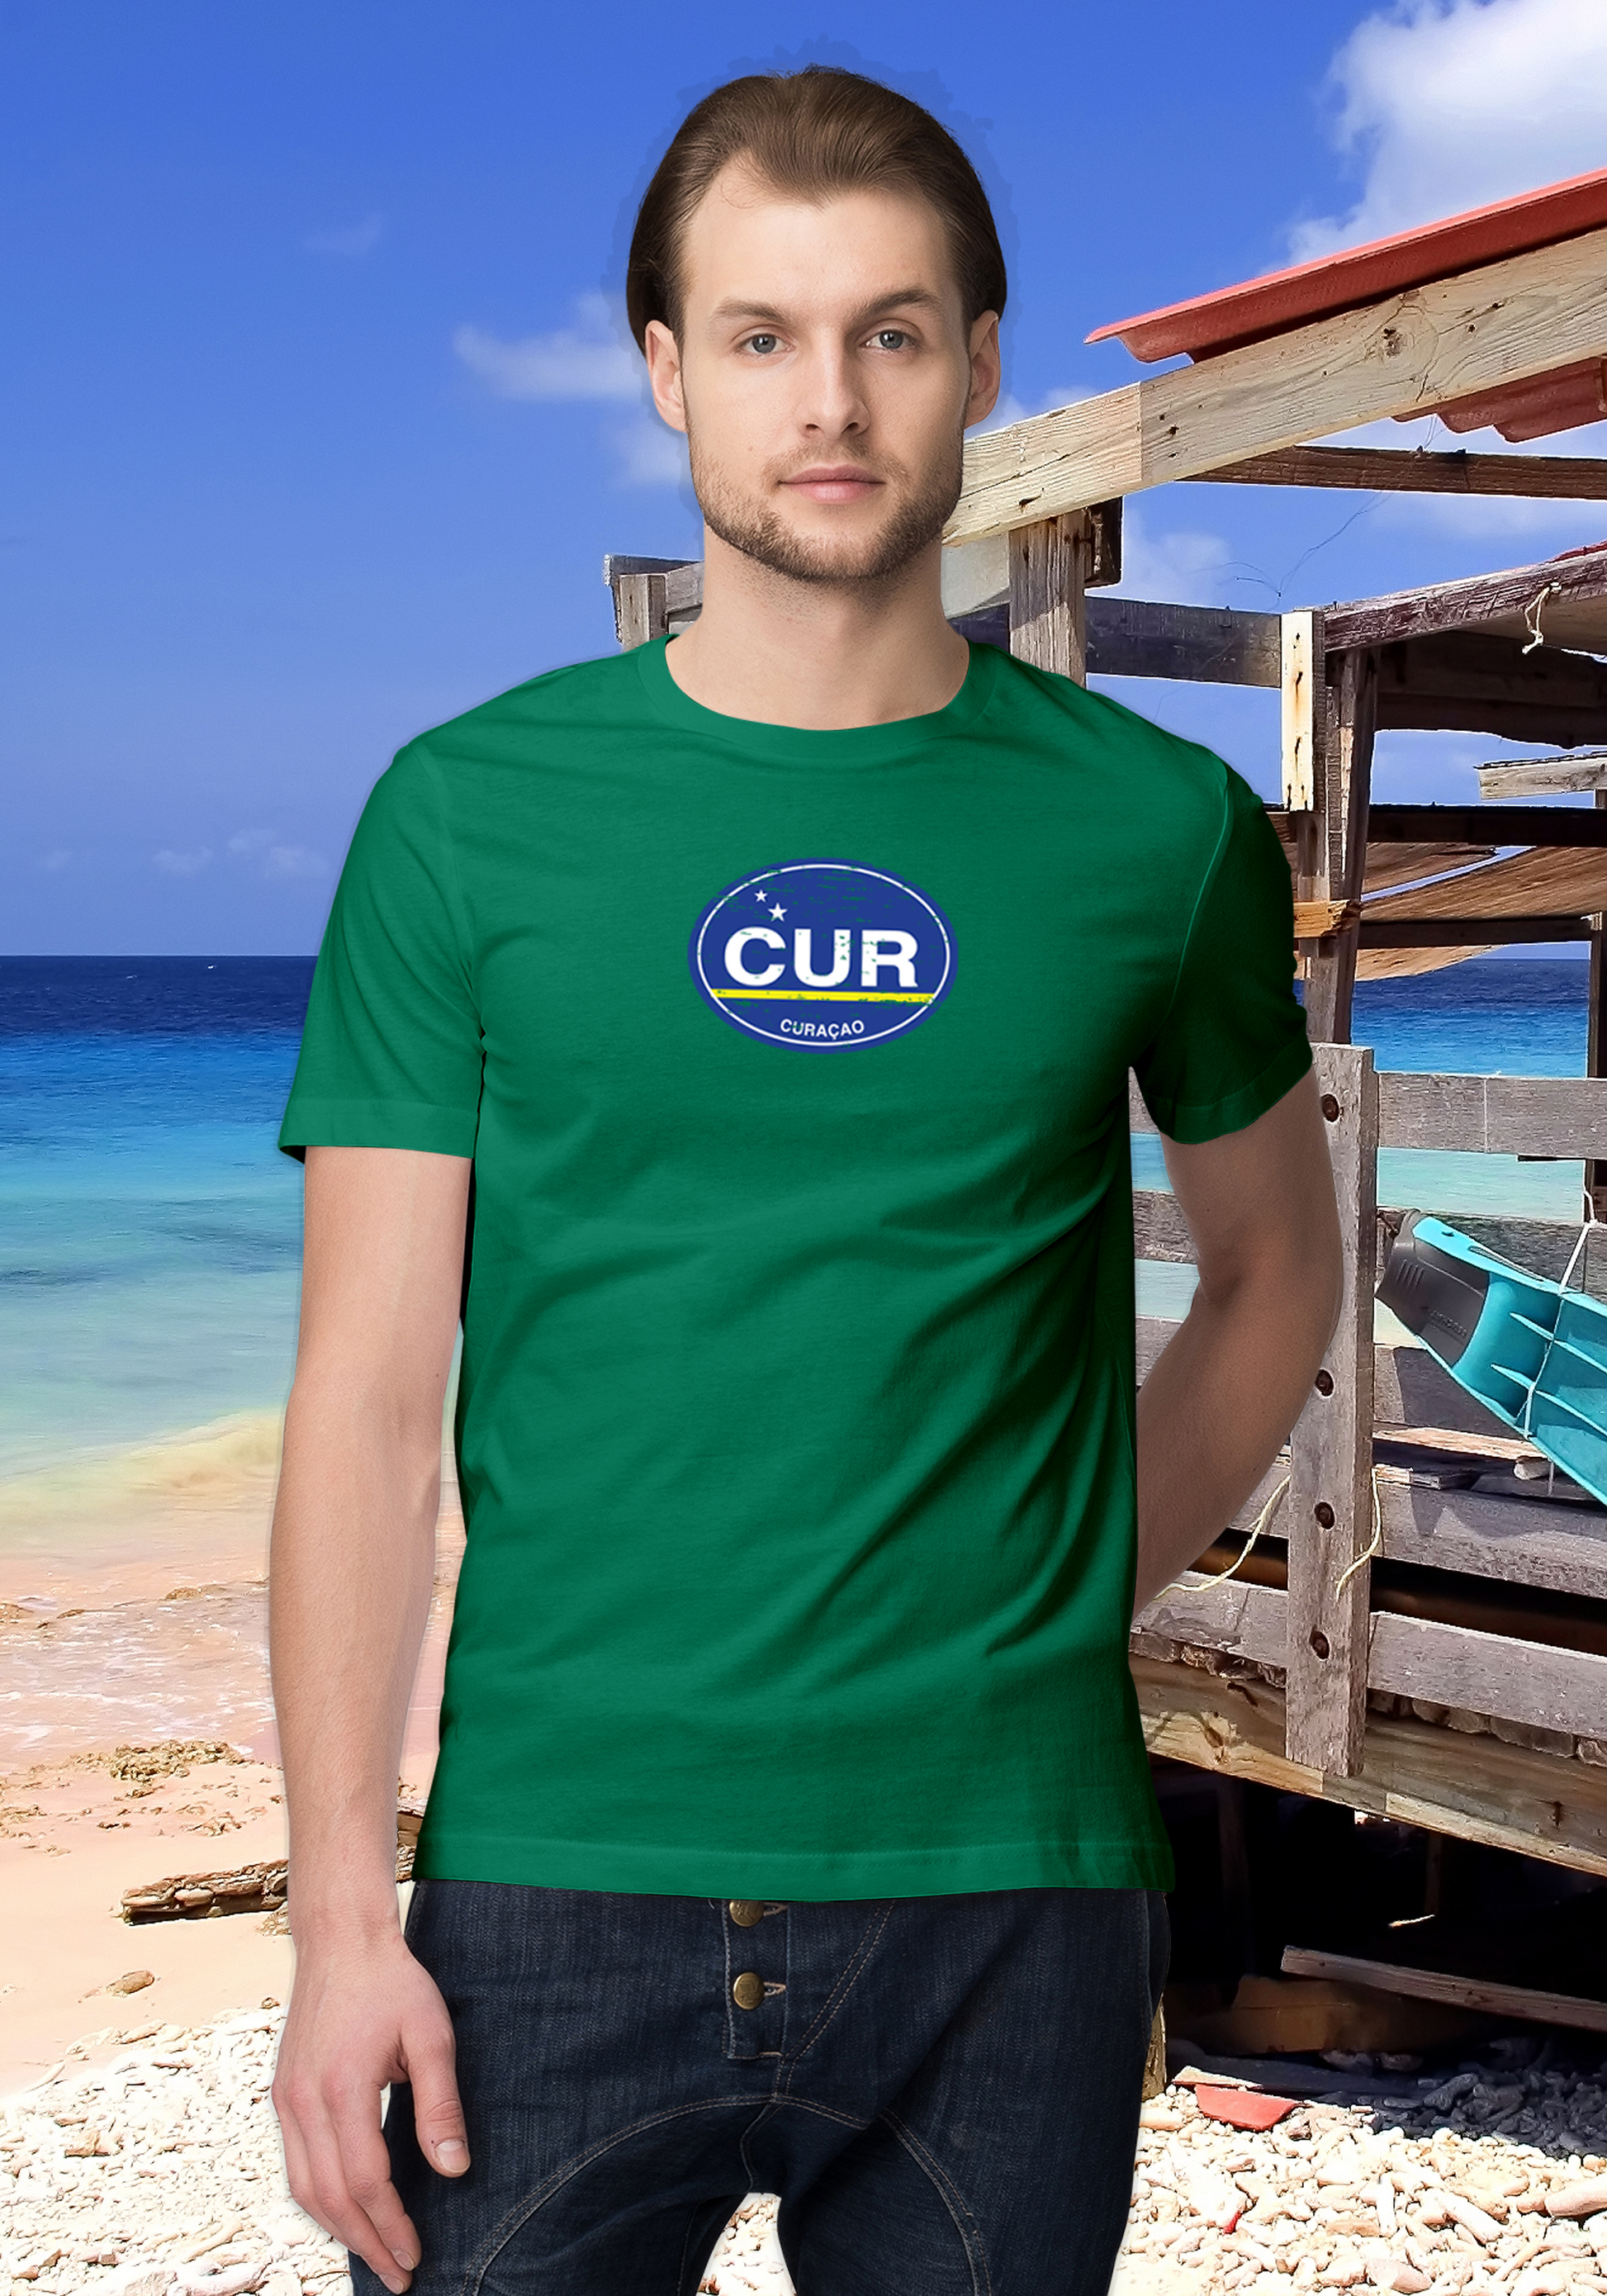 Curacao Men's Flag T-Shirt Souvenirs - My Destination Location